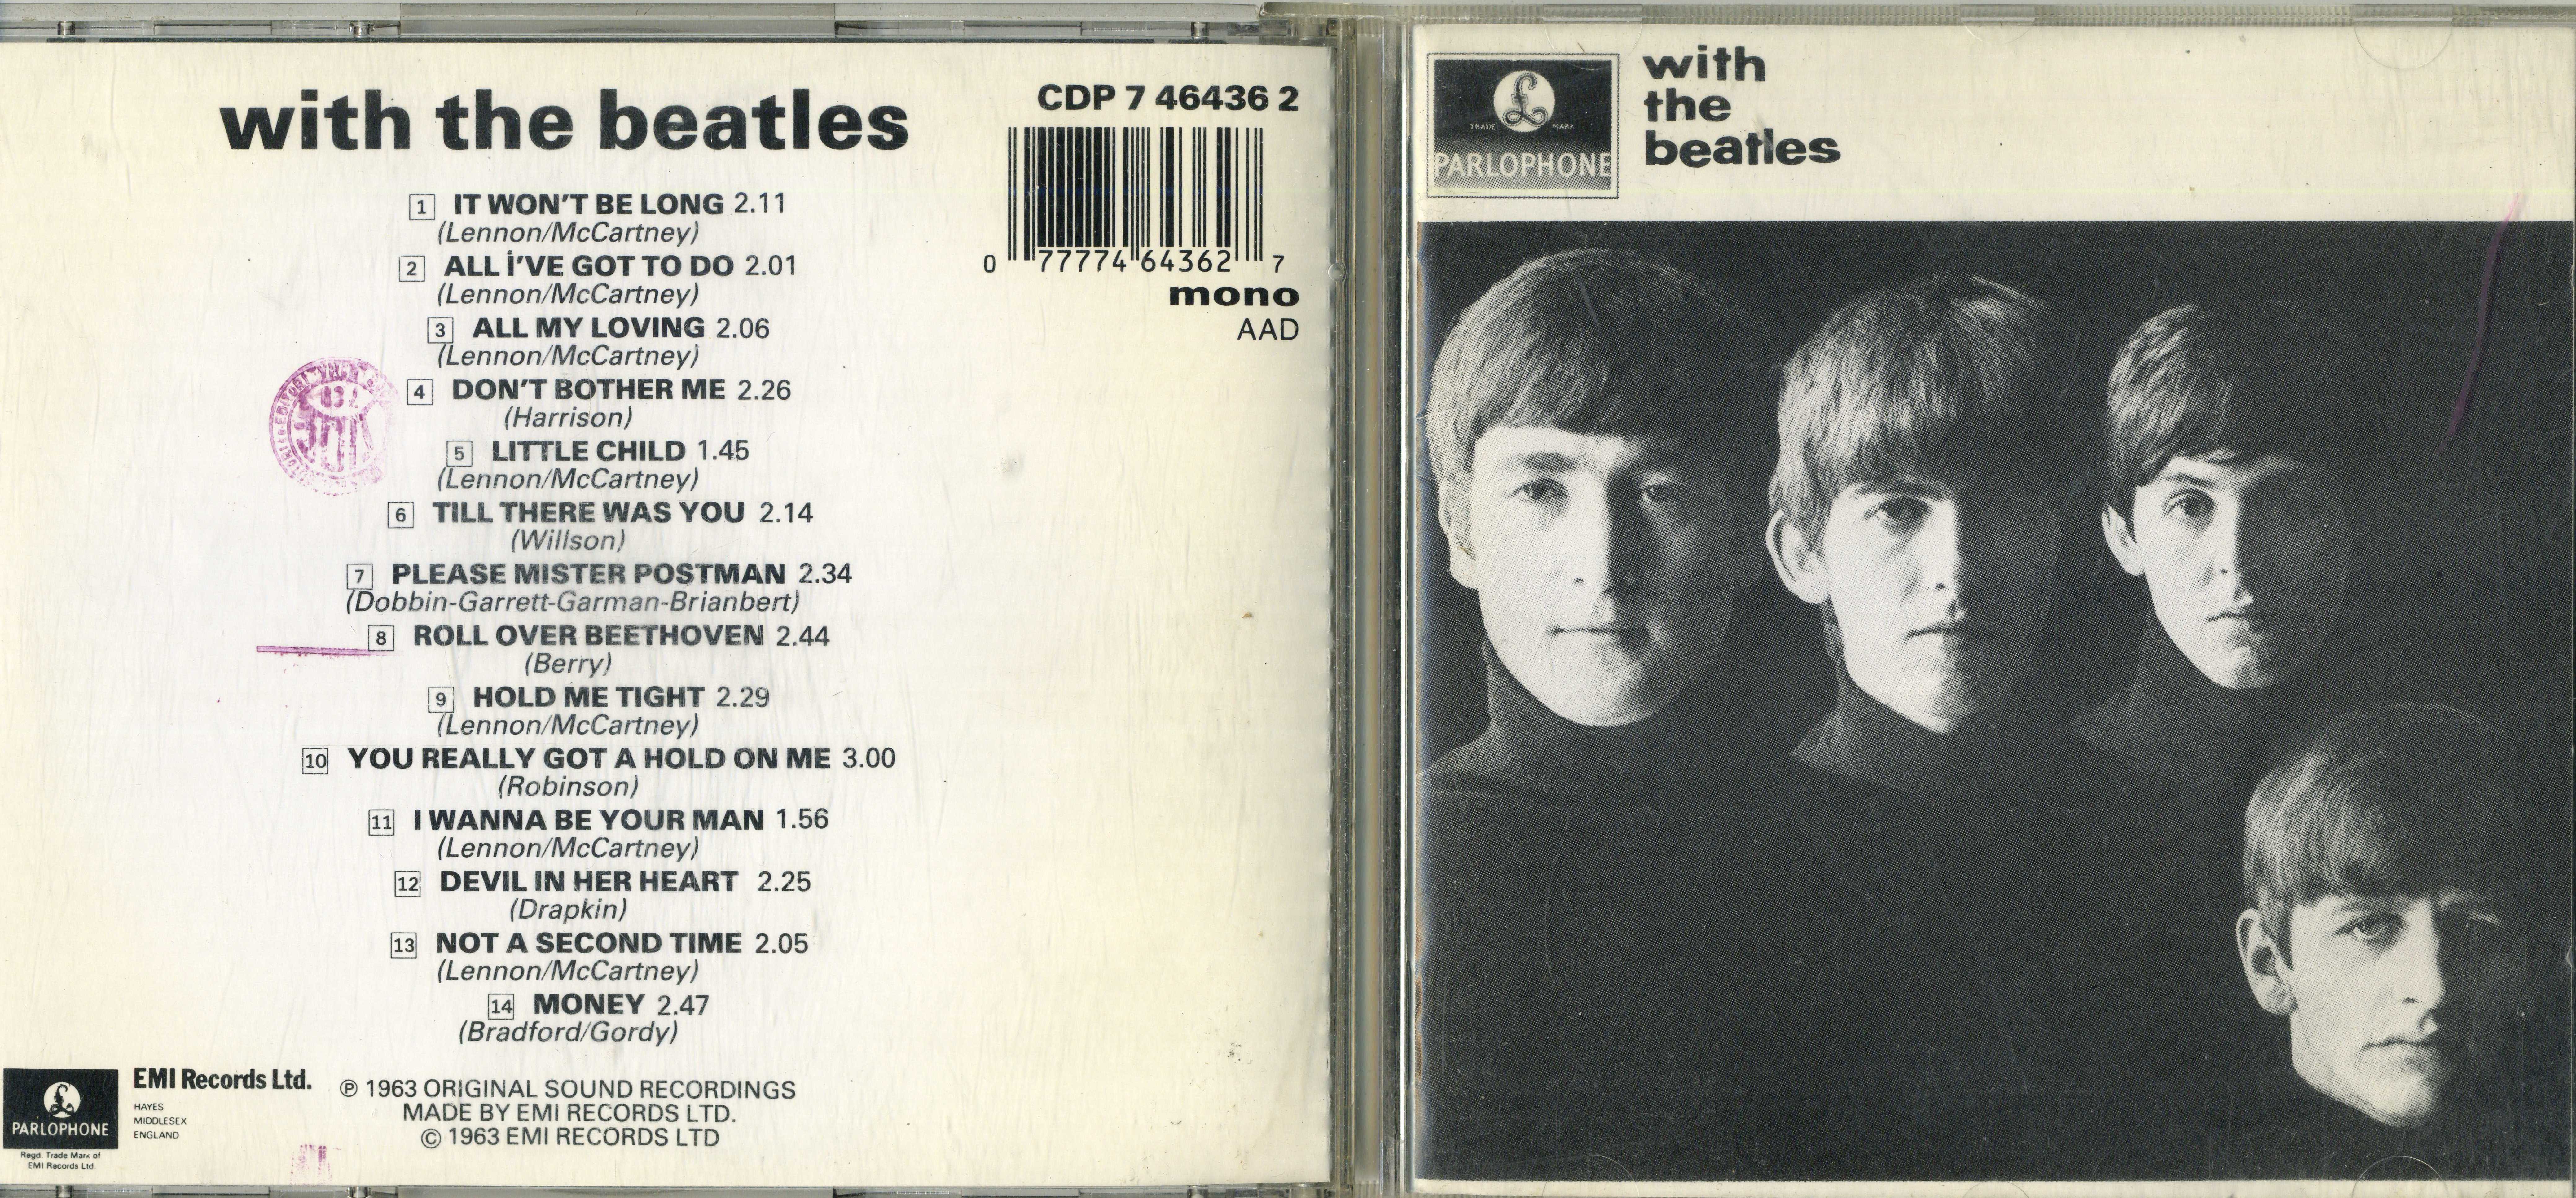 The beatles альбом the beatles (white album) 1968 (2010)